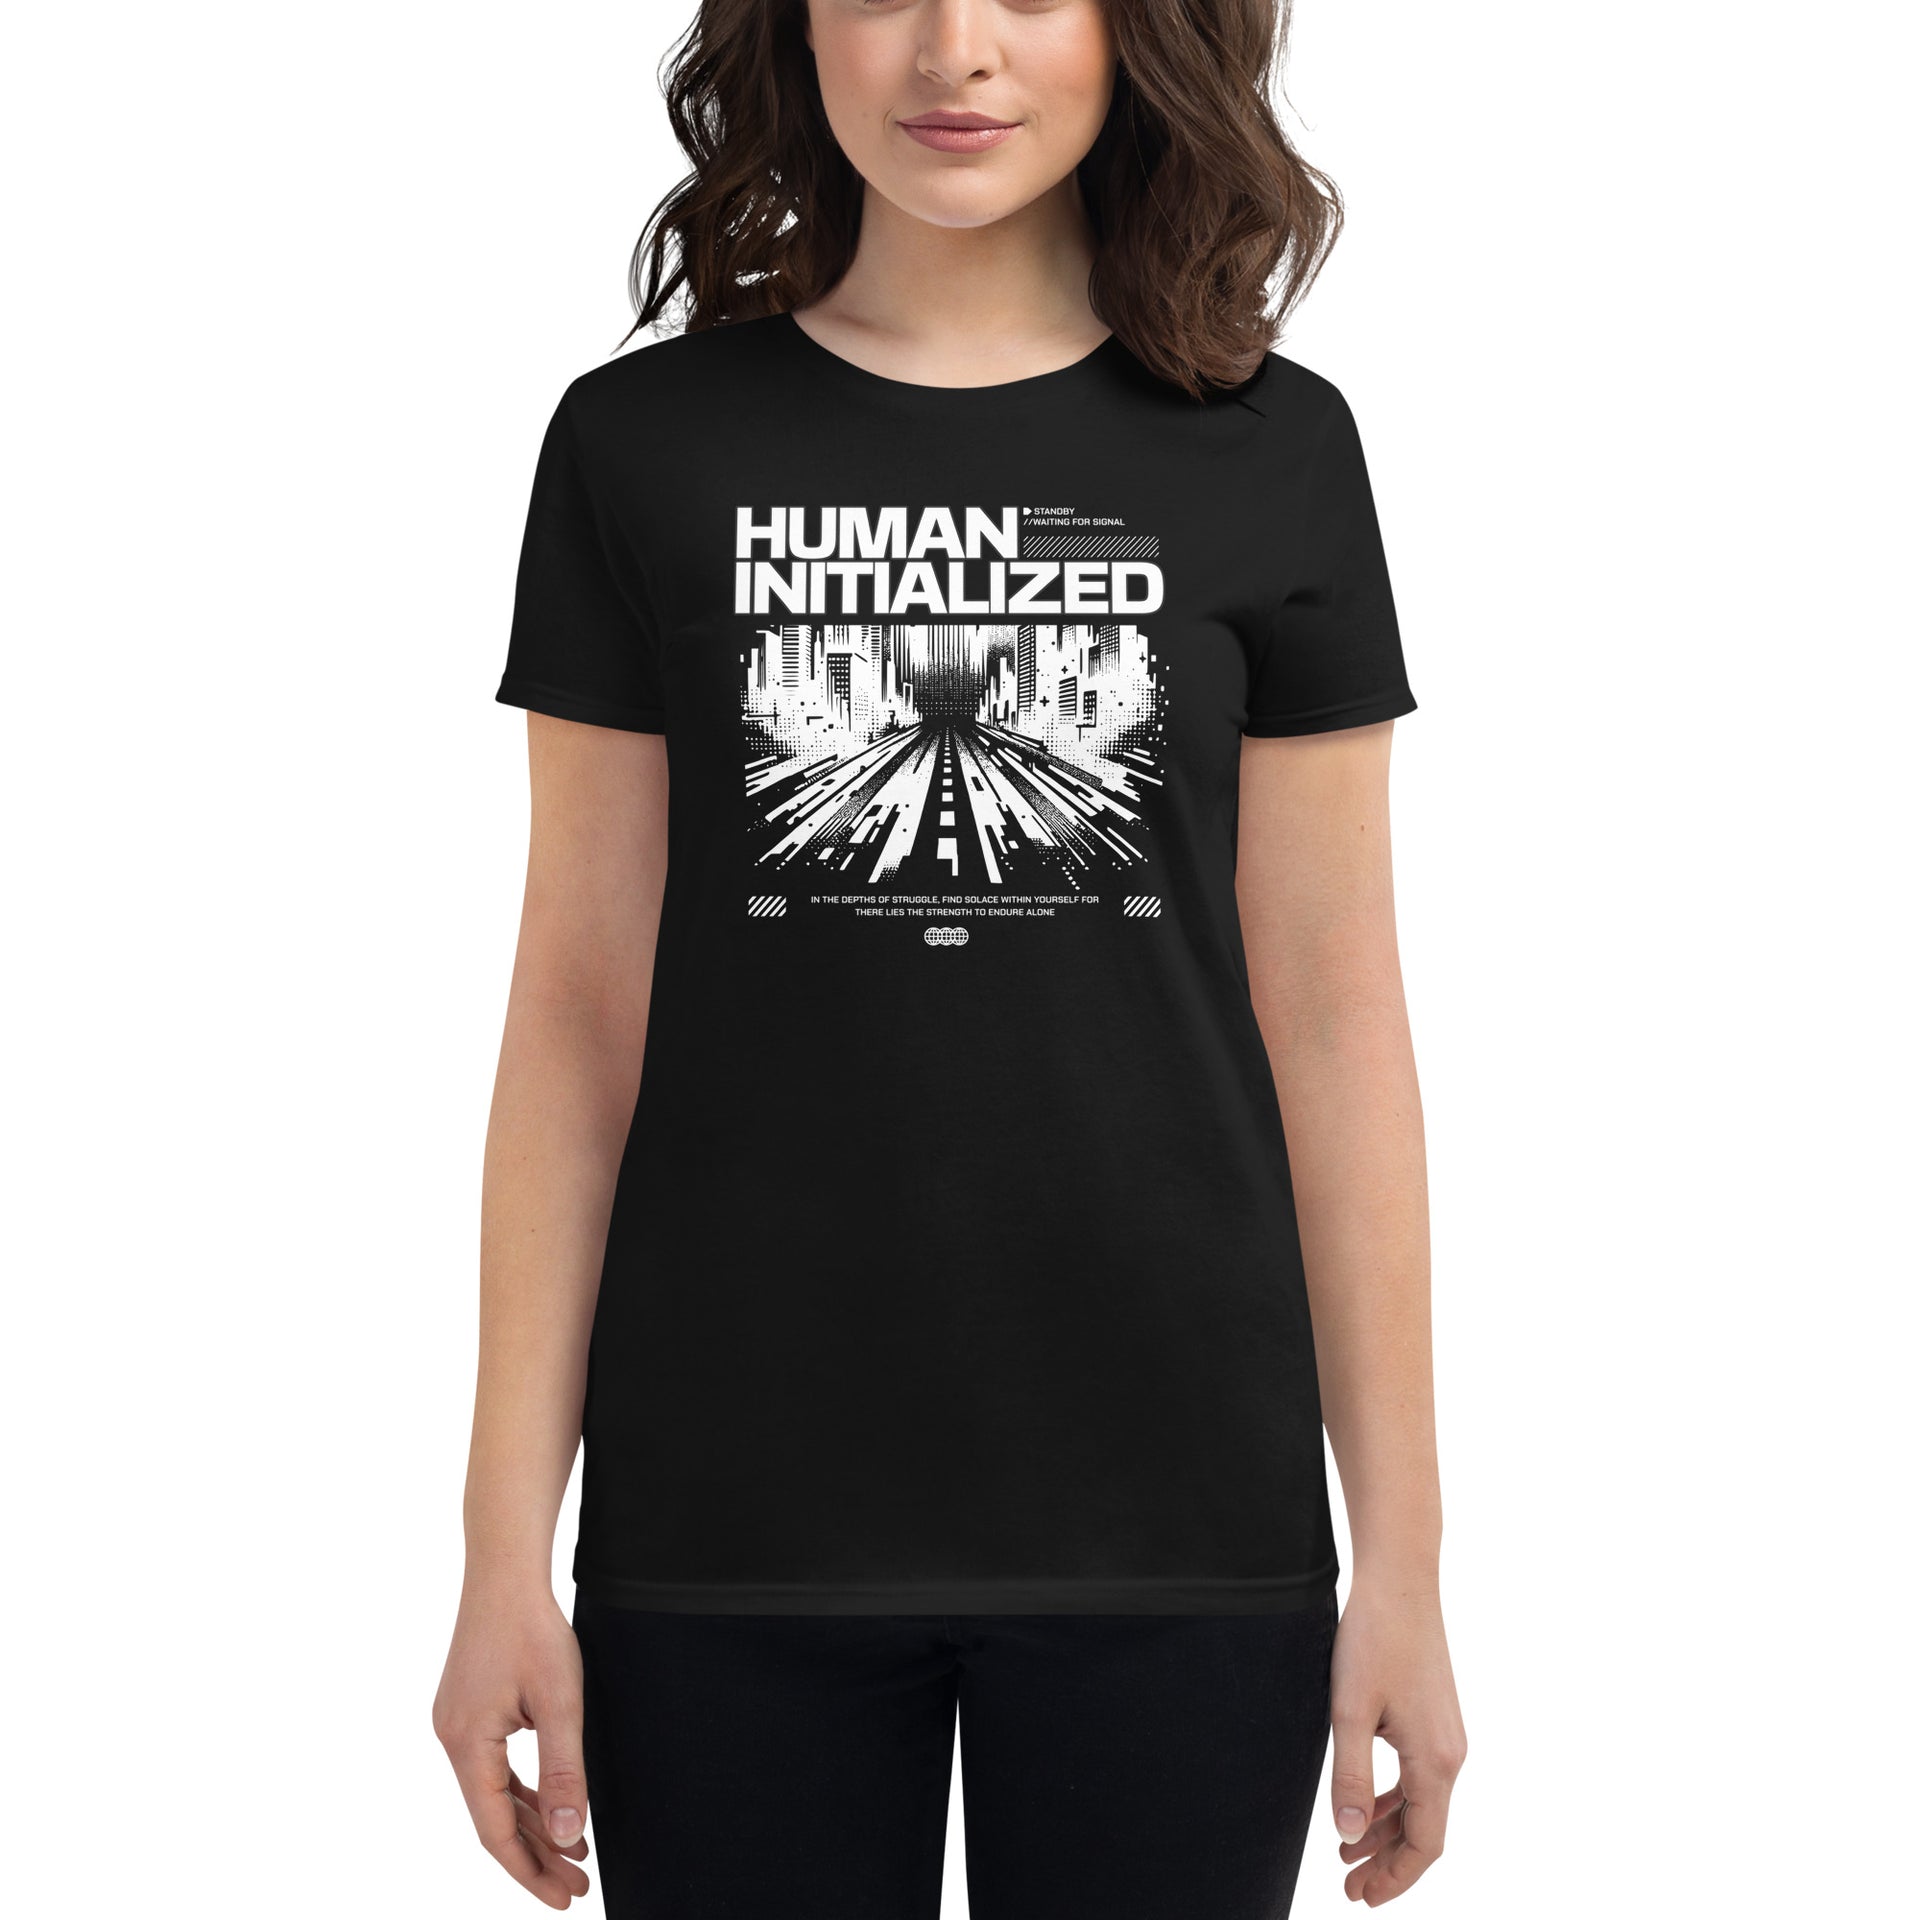 Human Initialized Women's T-Shirt